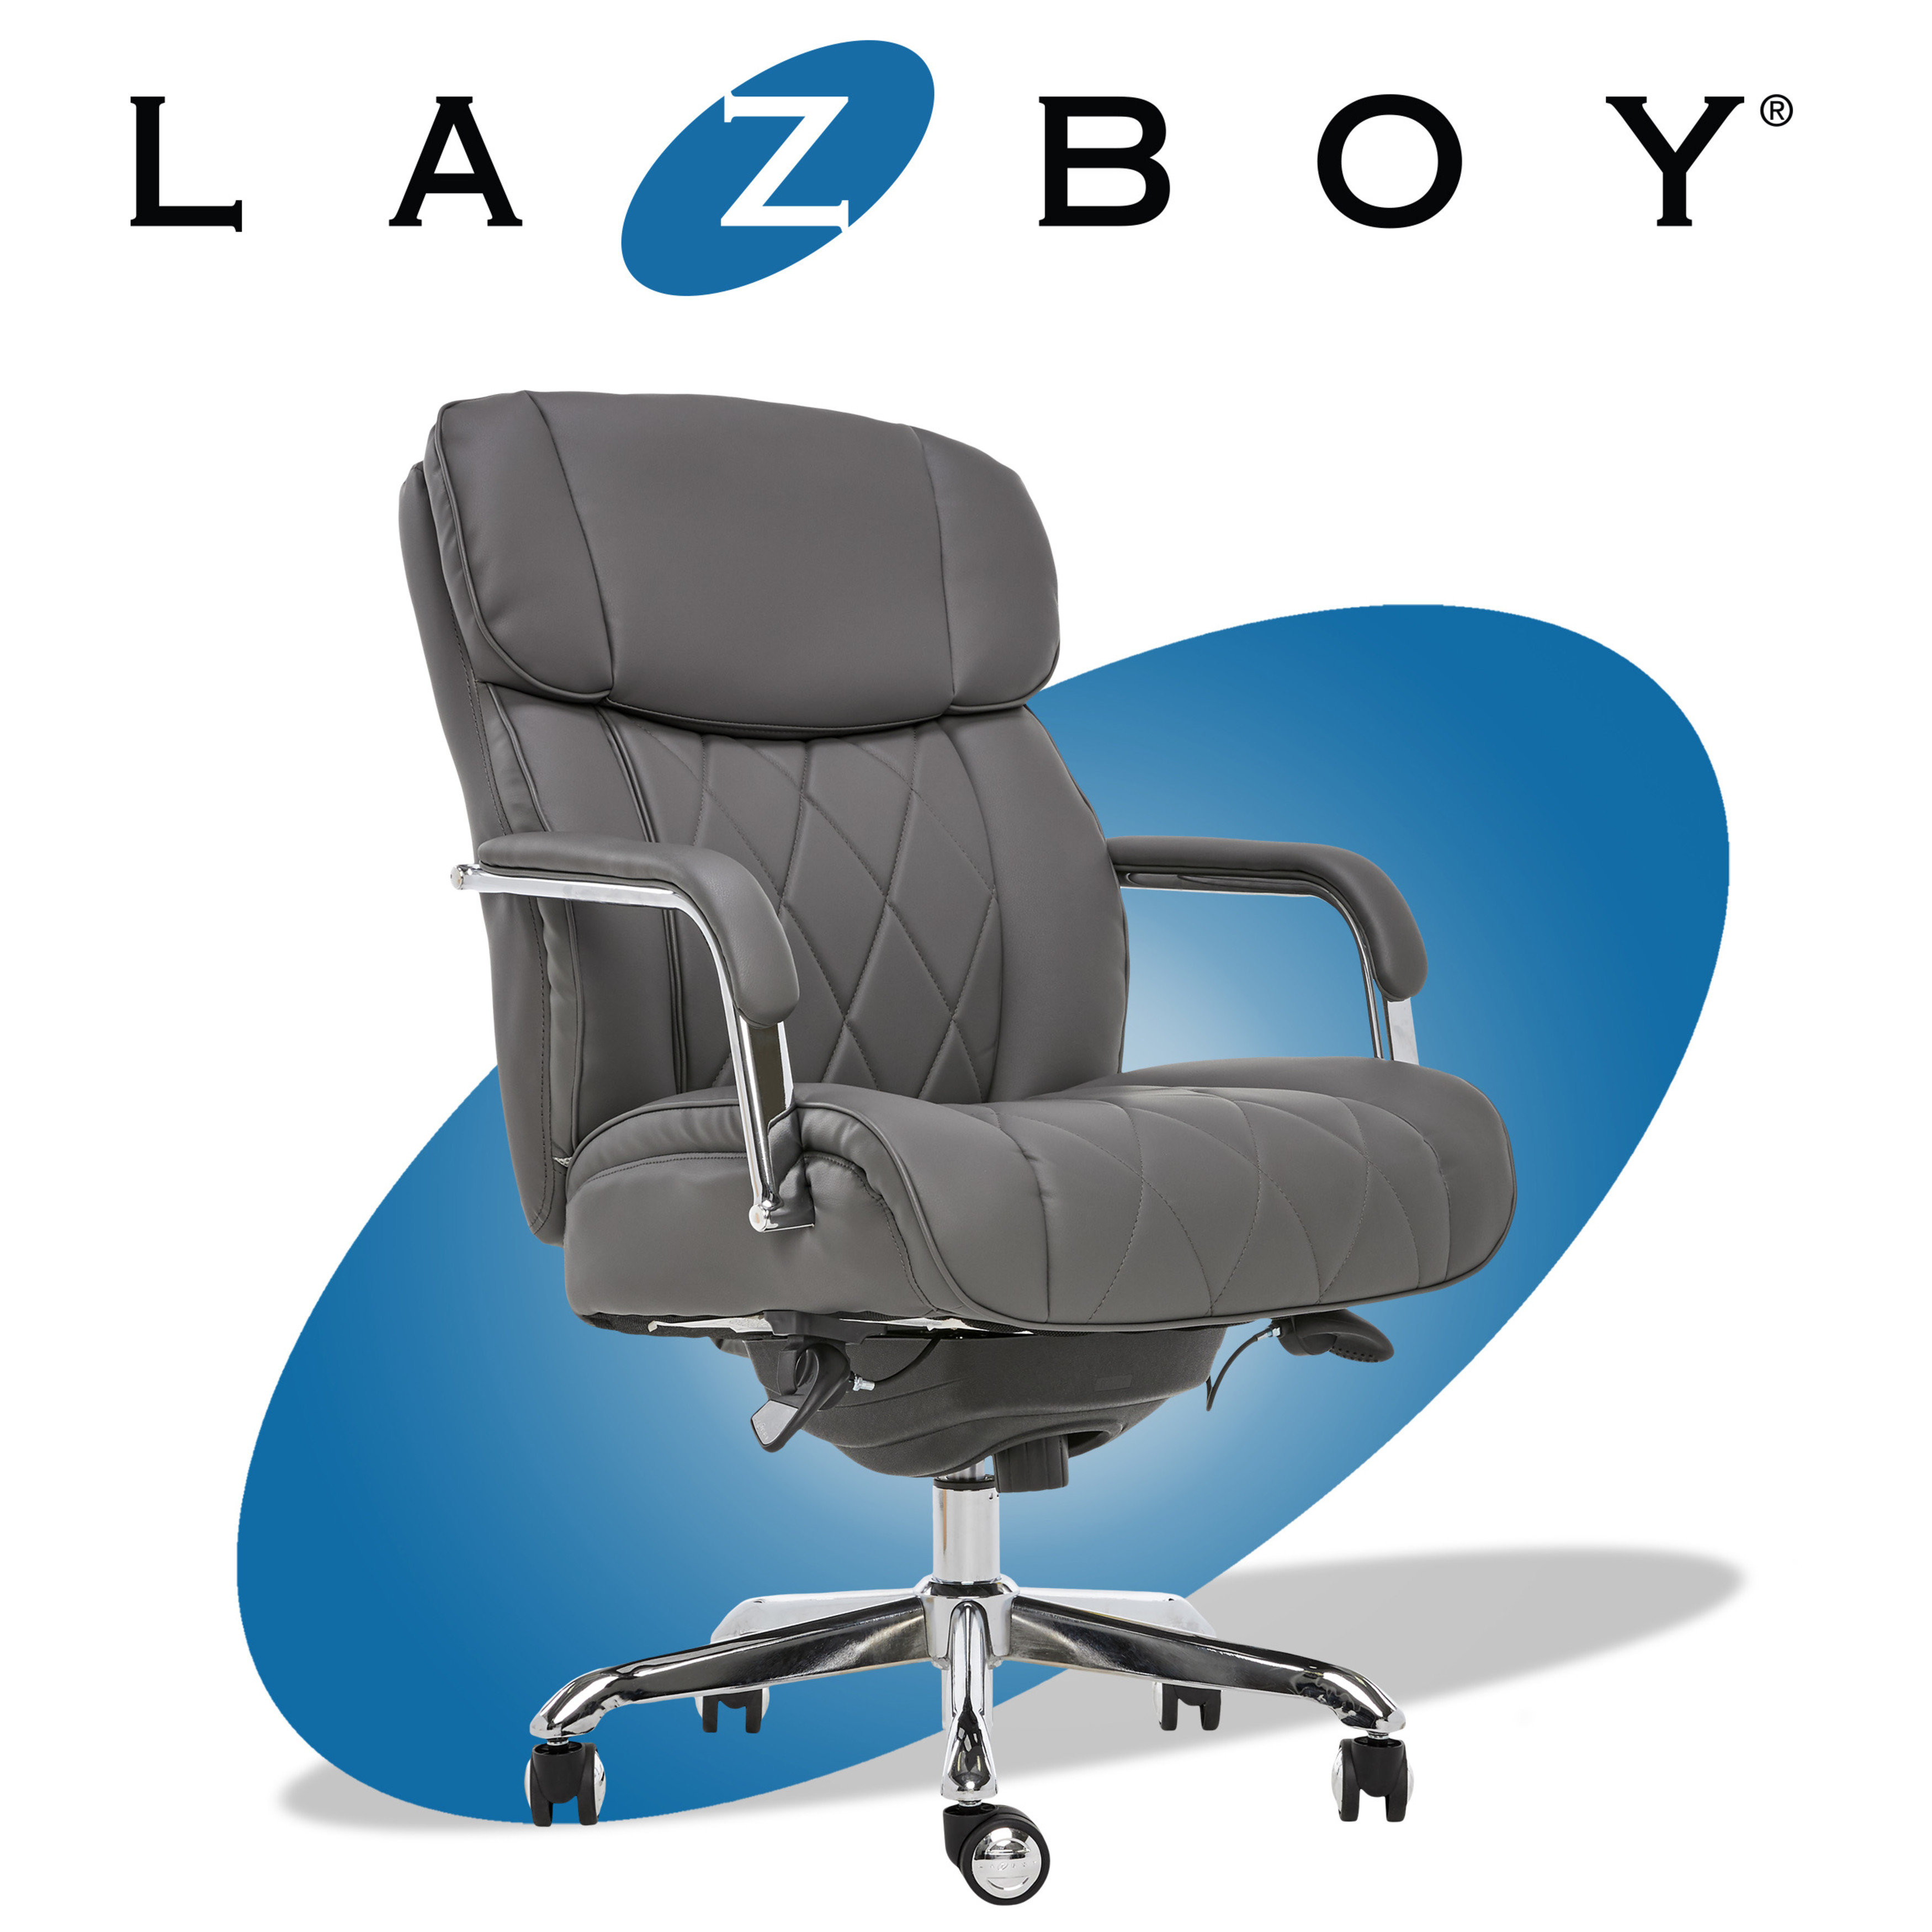 La-Z-Boy Executive Mesh High Back Chair